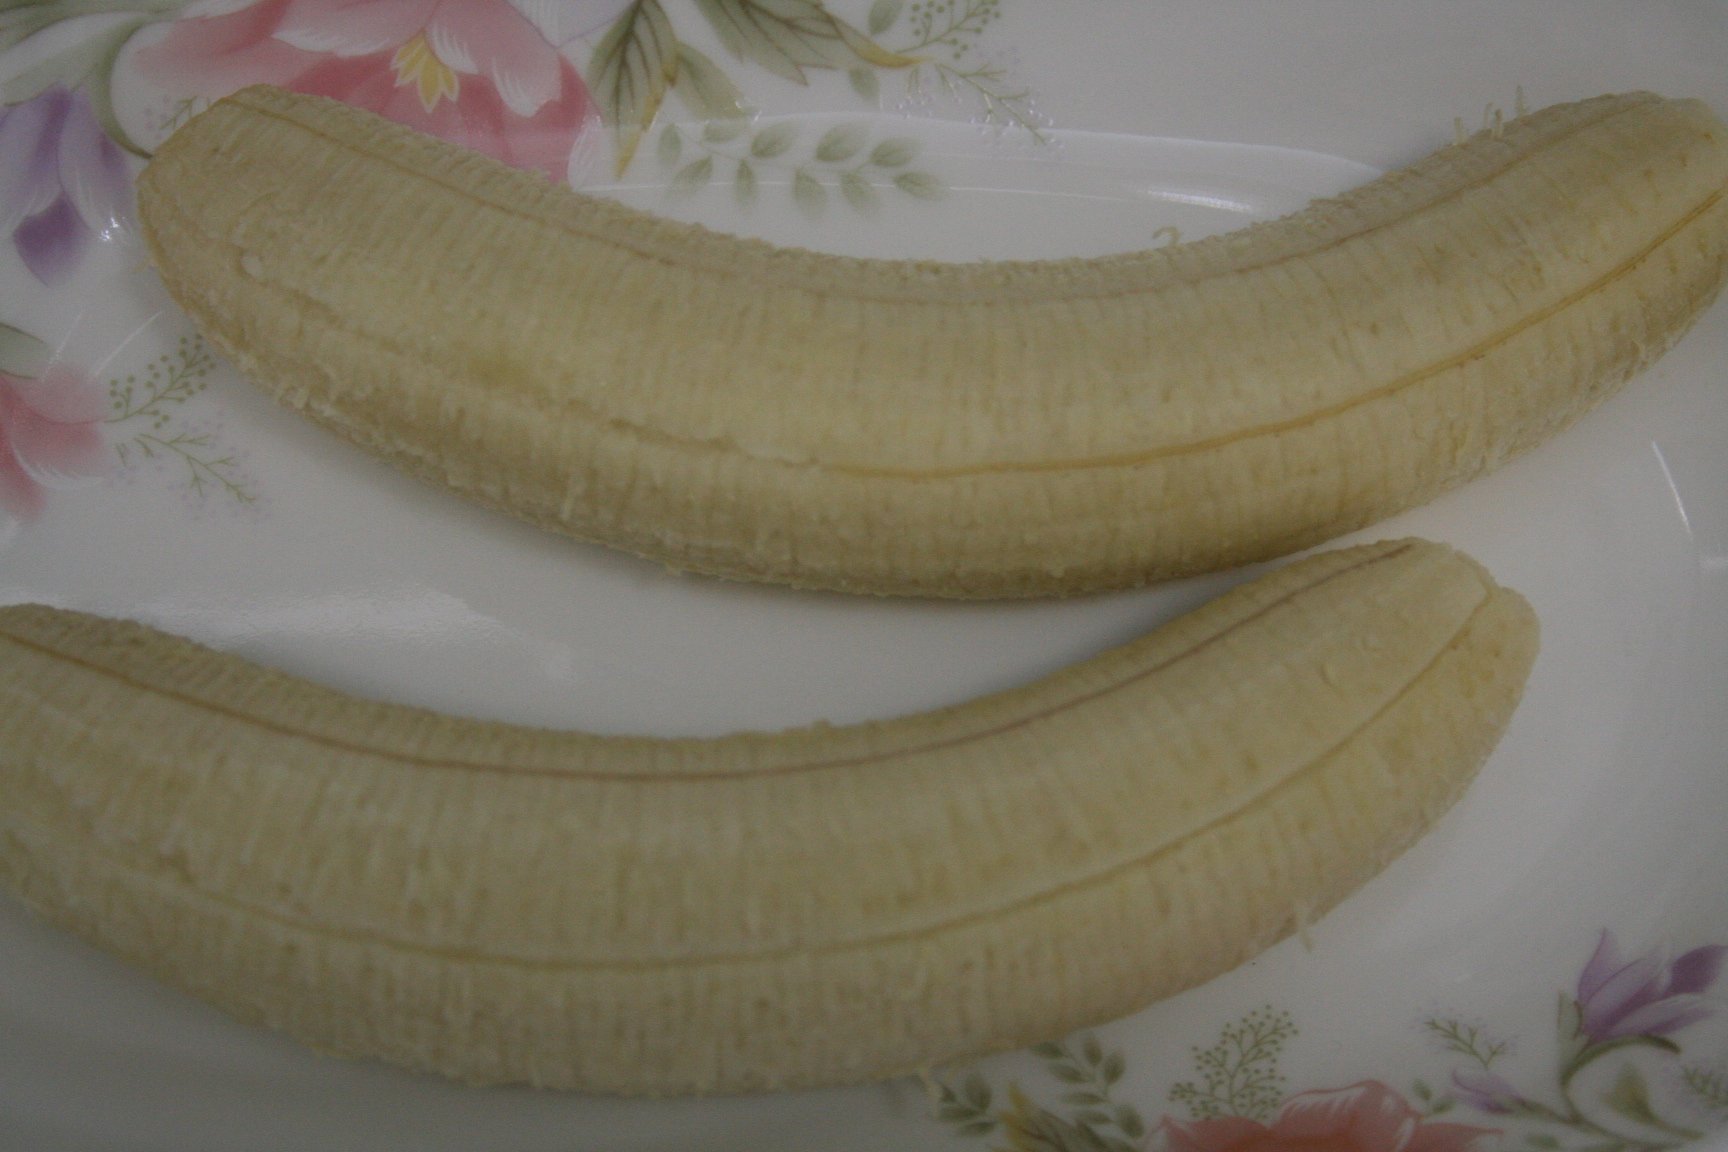 冰凍香蕉